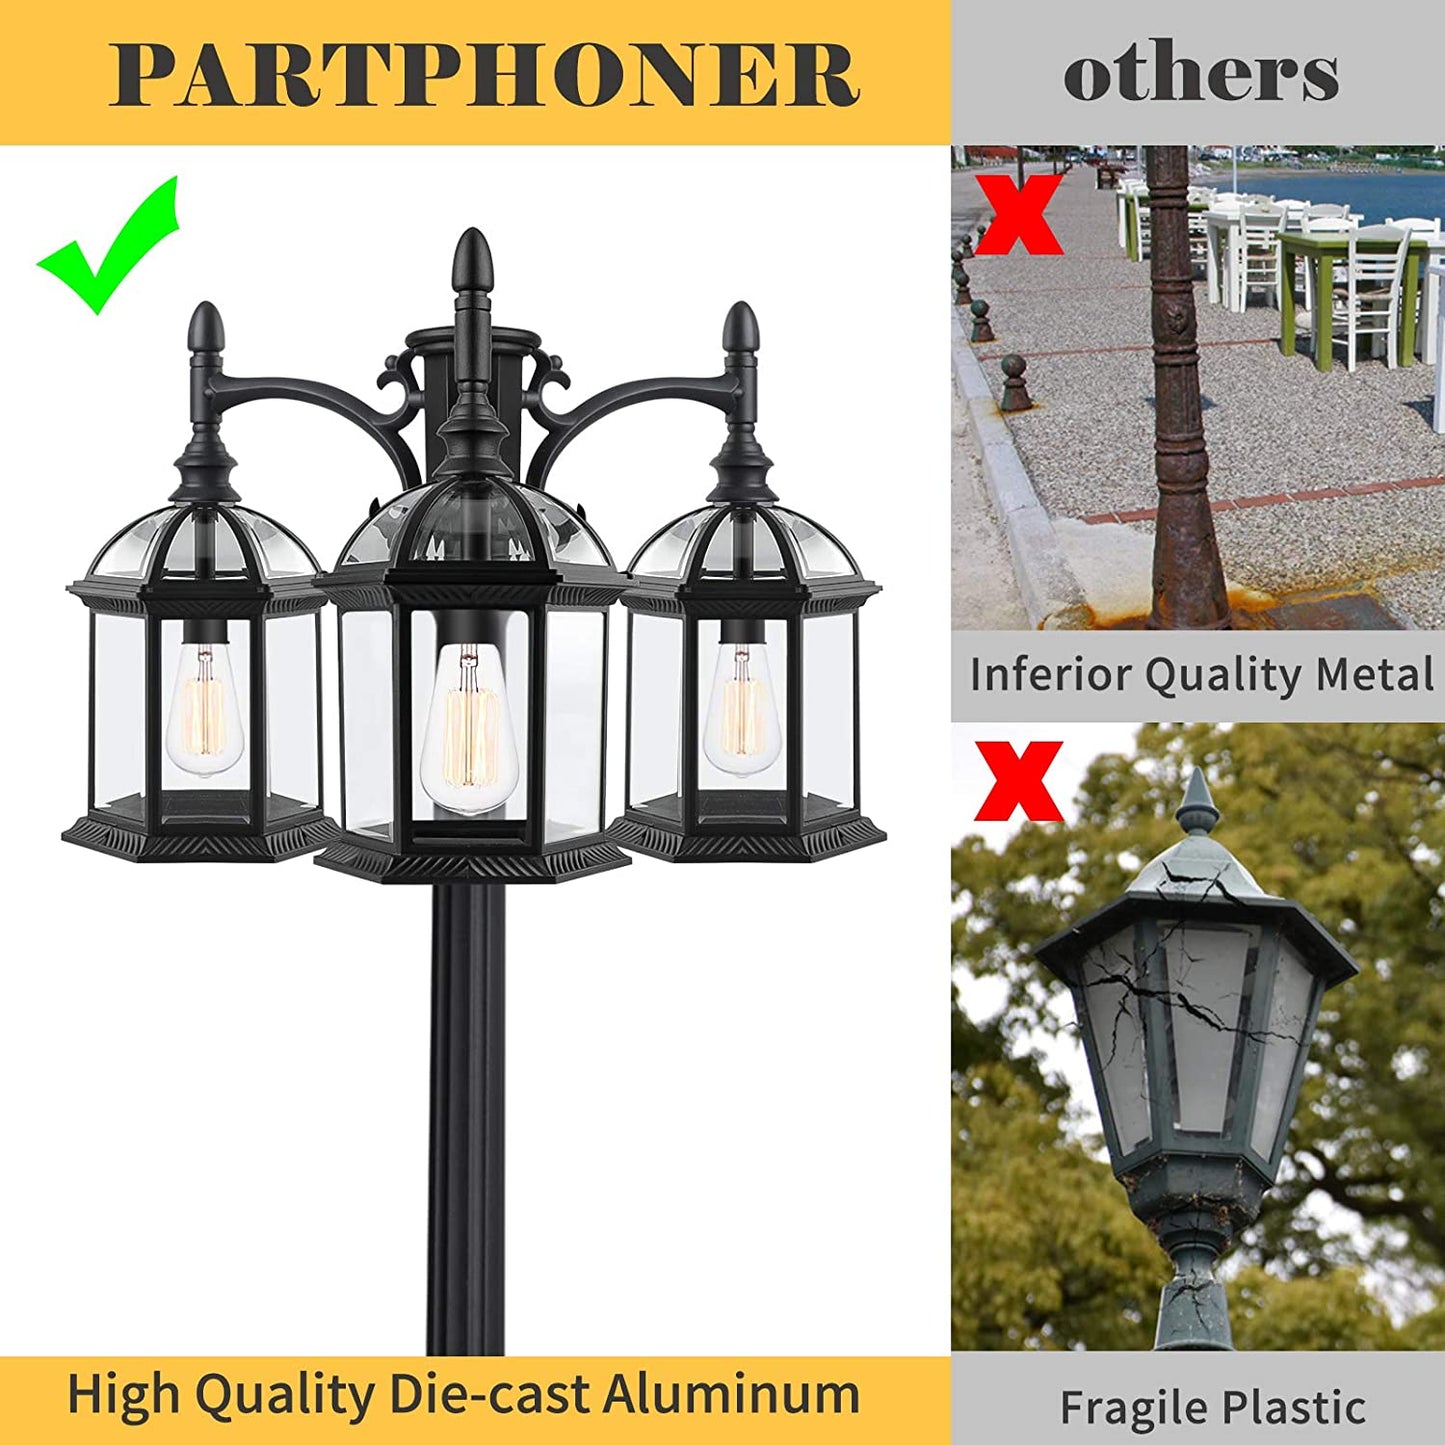 PARTPHONER 3-Head Outdoor Lamp Post Light Birdcage, Black